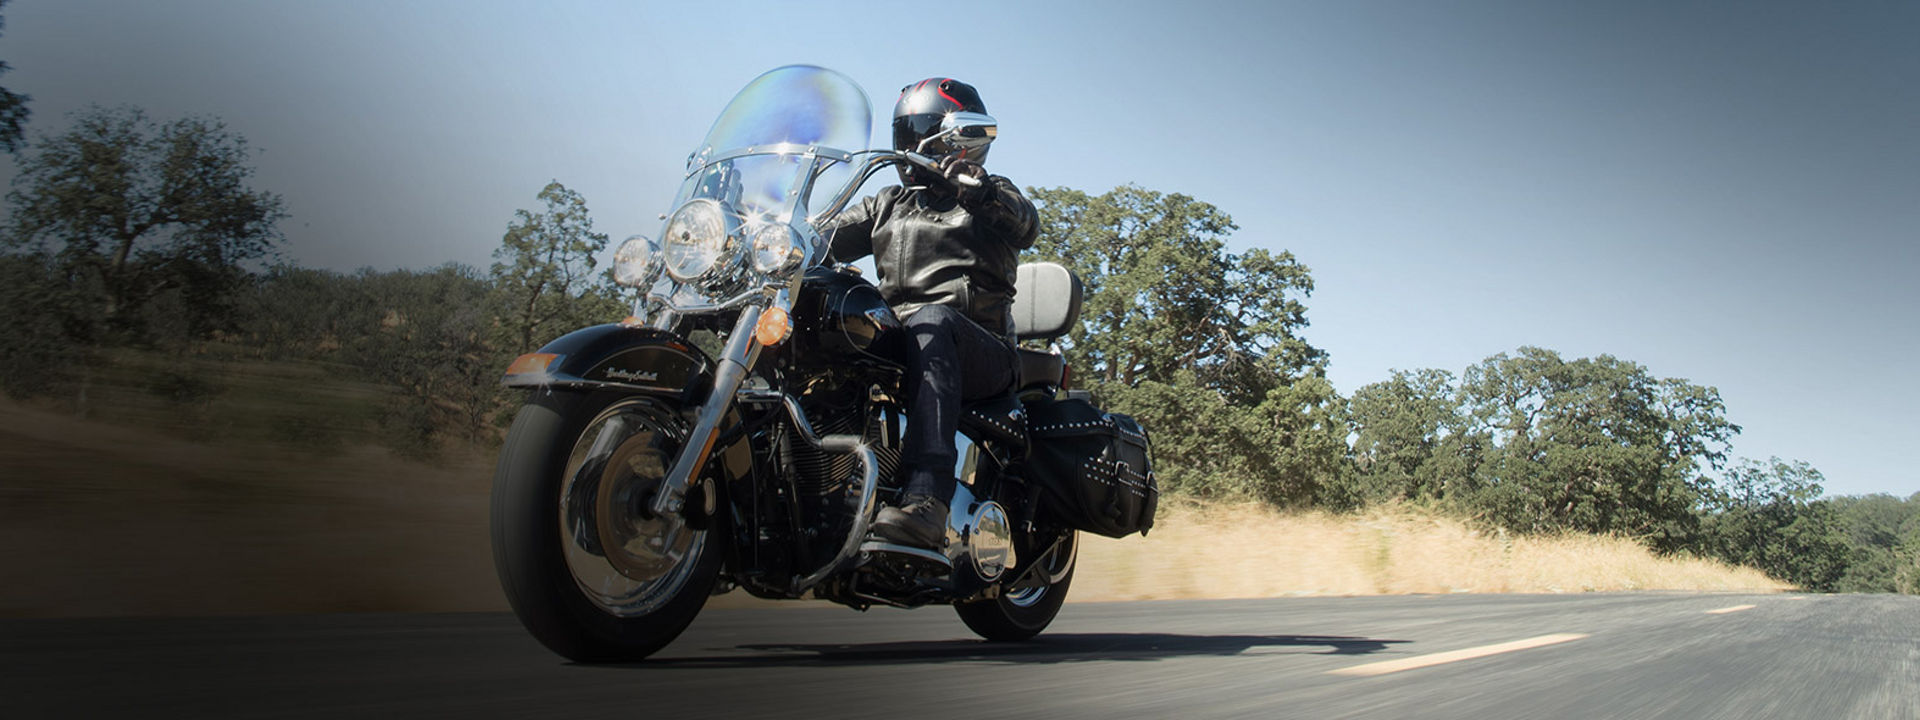 Obrázek ukazuje motocyklistu jedoucího na Custom pneumatikách Bridgestone.